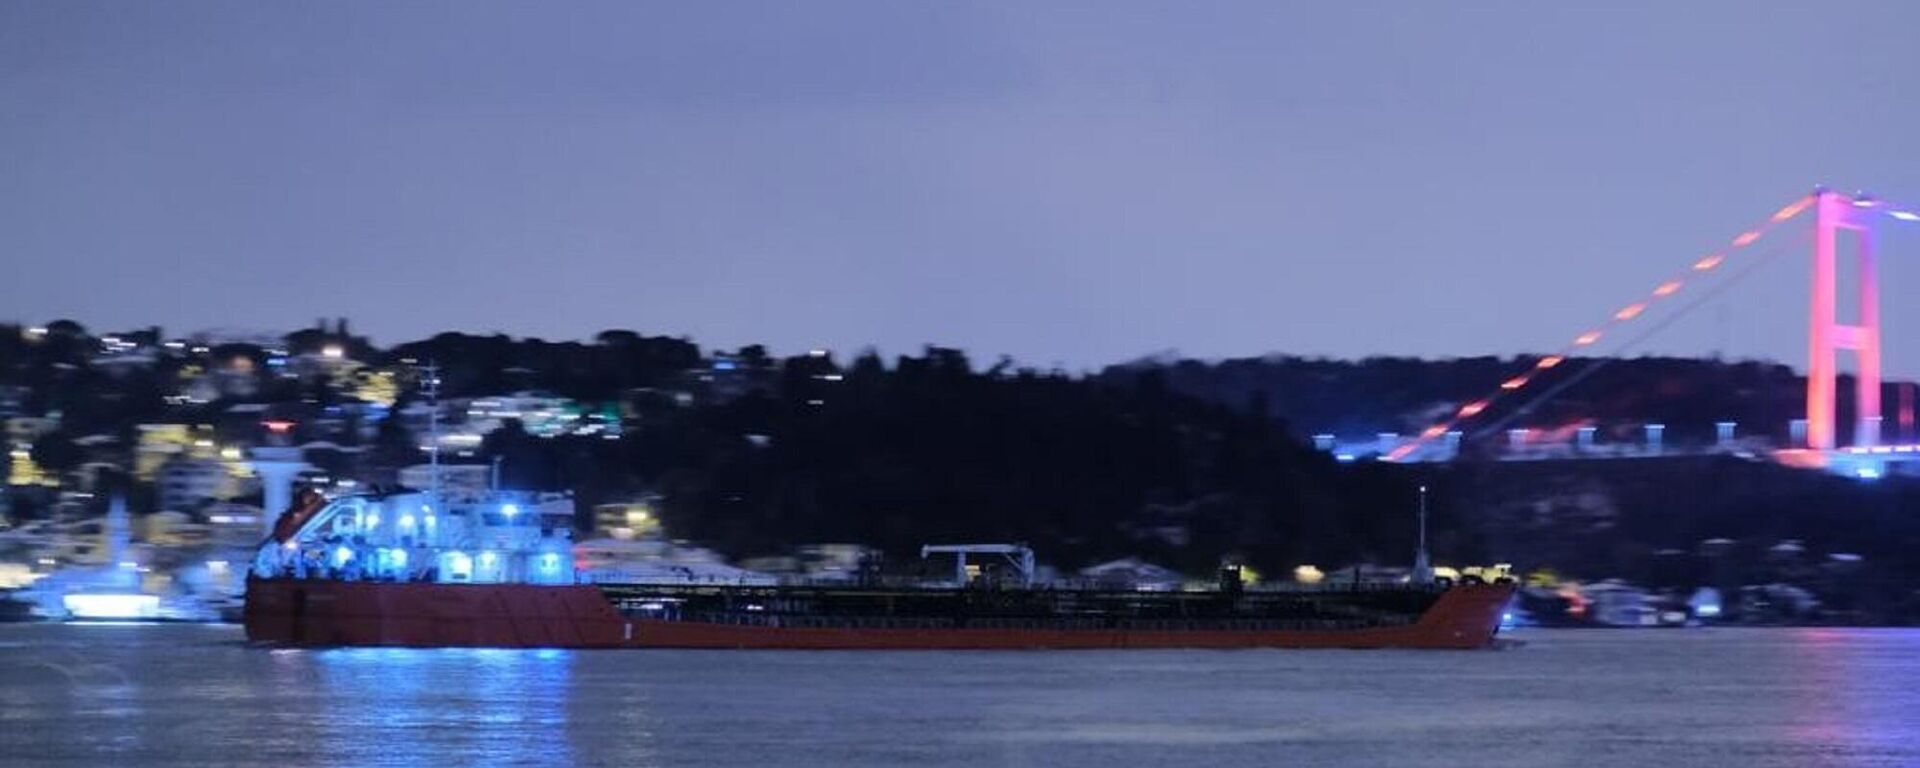 Rusya’nın Yisk limanından çıkış yapan ve 6 bin 99 ton ayçiçek yağı yüklü Lilac isimli yük gemisi, Kerç kanalını geçerek İstanbul Boğazına ulaştı. İstanbul Boğazı’ndan geçişini tamamlayan yük gemisinin, 15 Mart’ta Mersin Limanı’nda olması bekleniyor. - Sputnik Türkiye, 1920, 12.03.2022